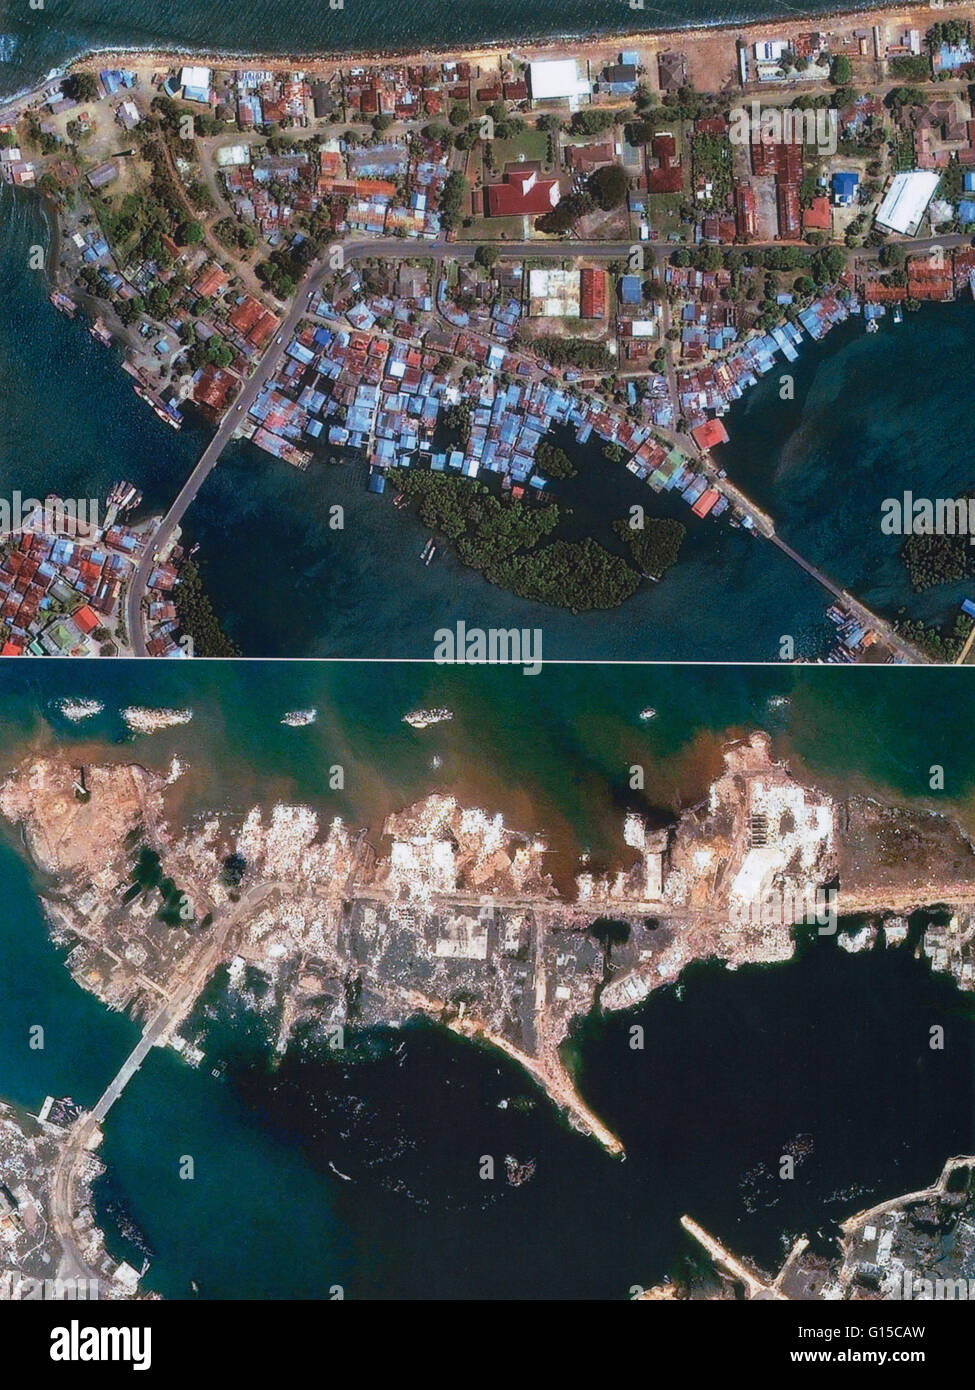 Una imagen de satélite de la isla de Sumatra, Indonesia, devastadoras antes y después del terremoto y el tsunami del 26 de diciembre de 2004. El epicentro del temblor fue en la costa occidental de Sumatra. Es el segundo terremoto más grande jamás registrada en un sismógrafo. Foto de stock